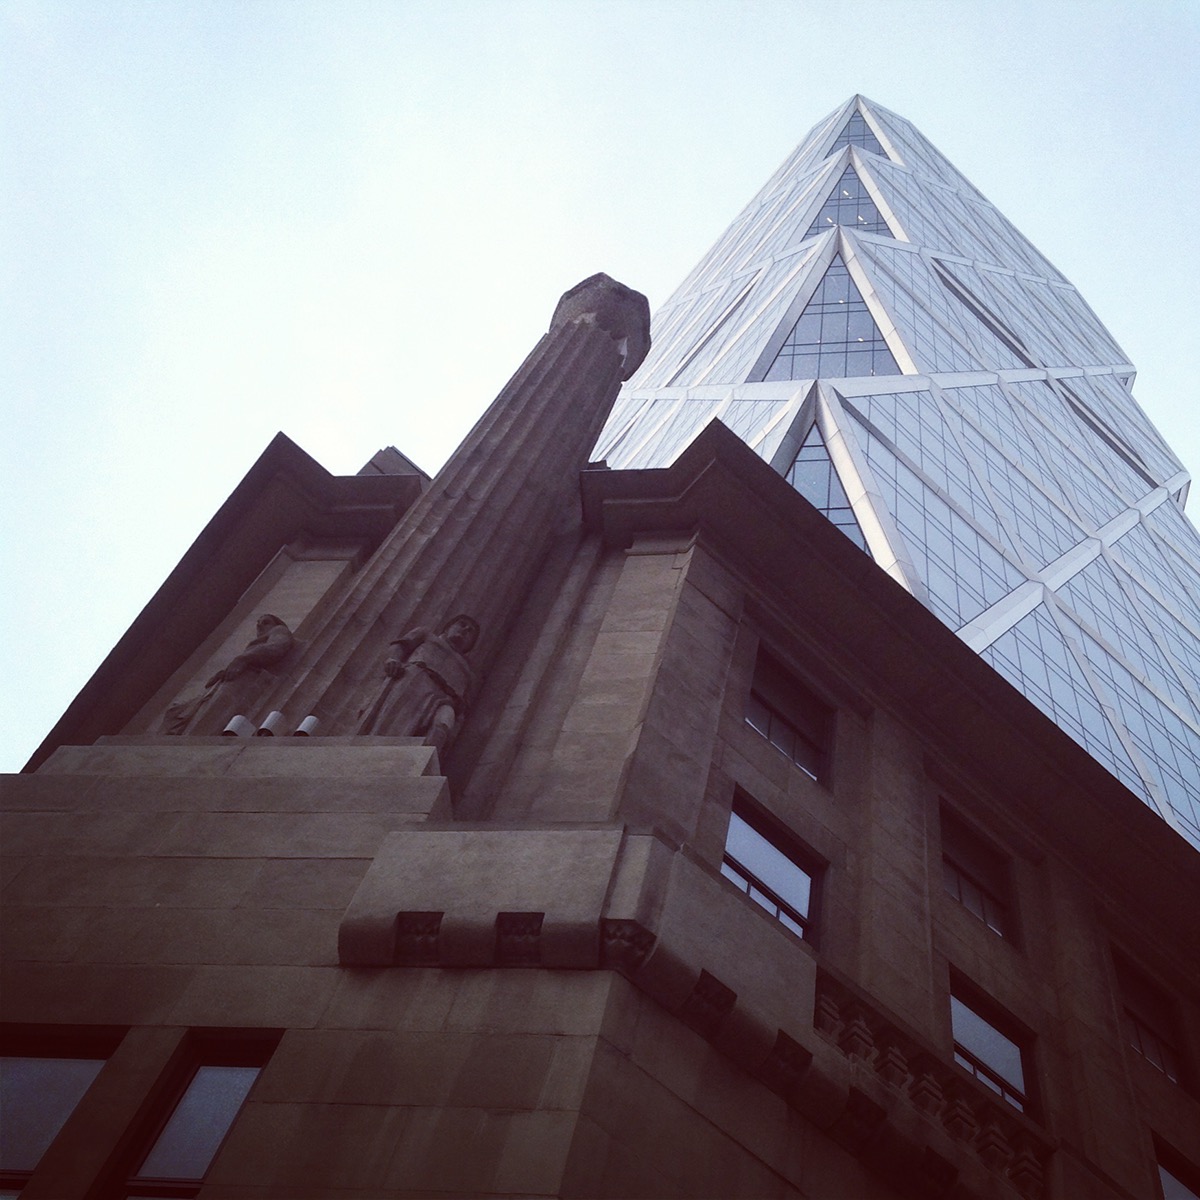 #architecture #NYC #NormanFoster #HEARSTTOWER #manhattan